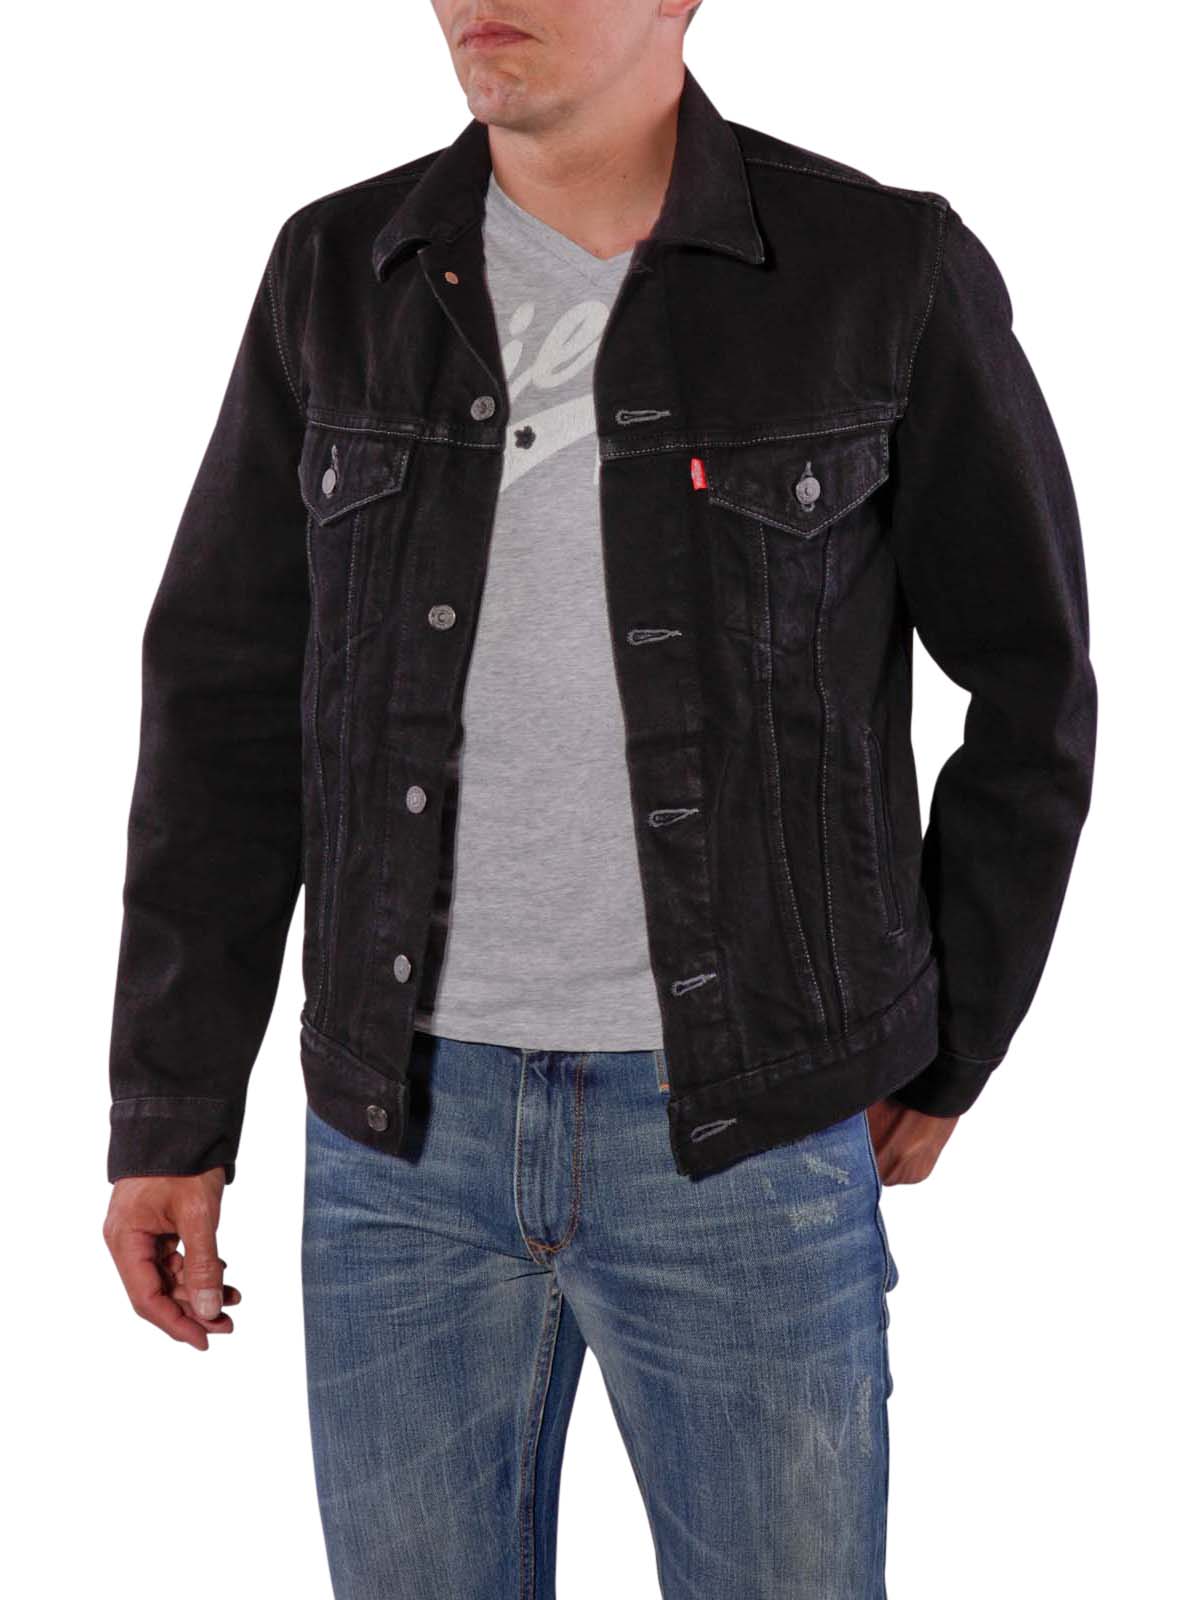 levi's trucker jacket sale